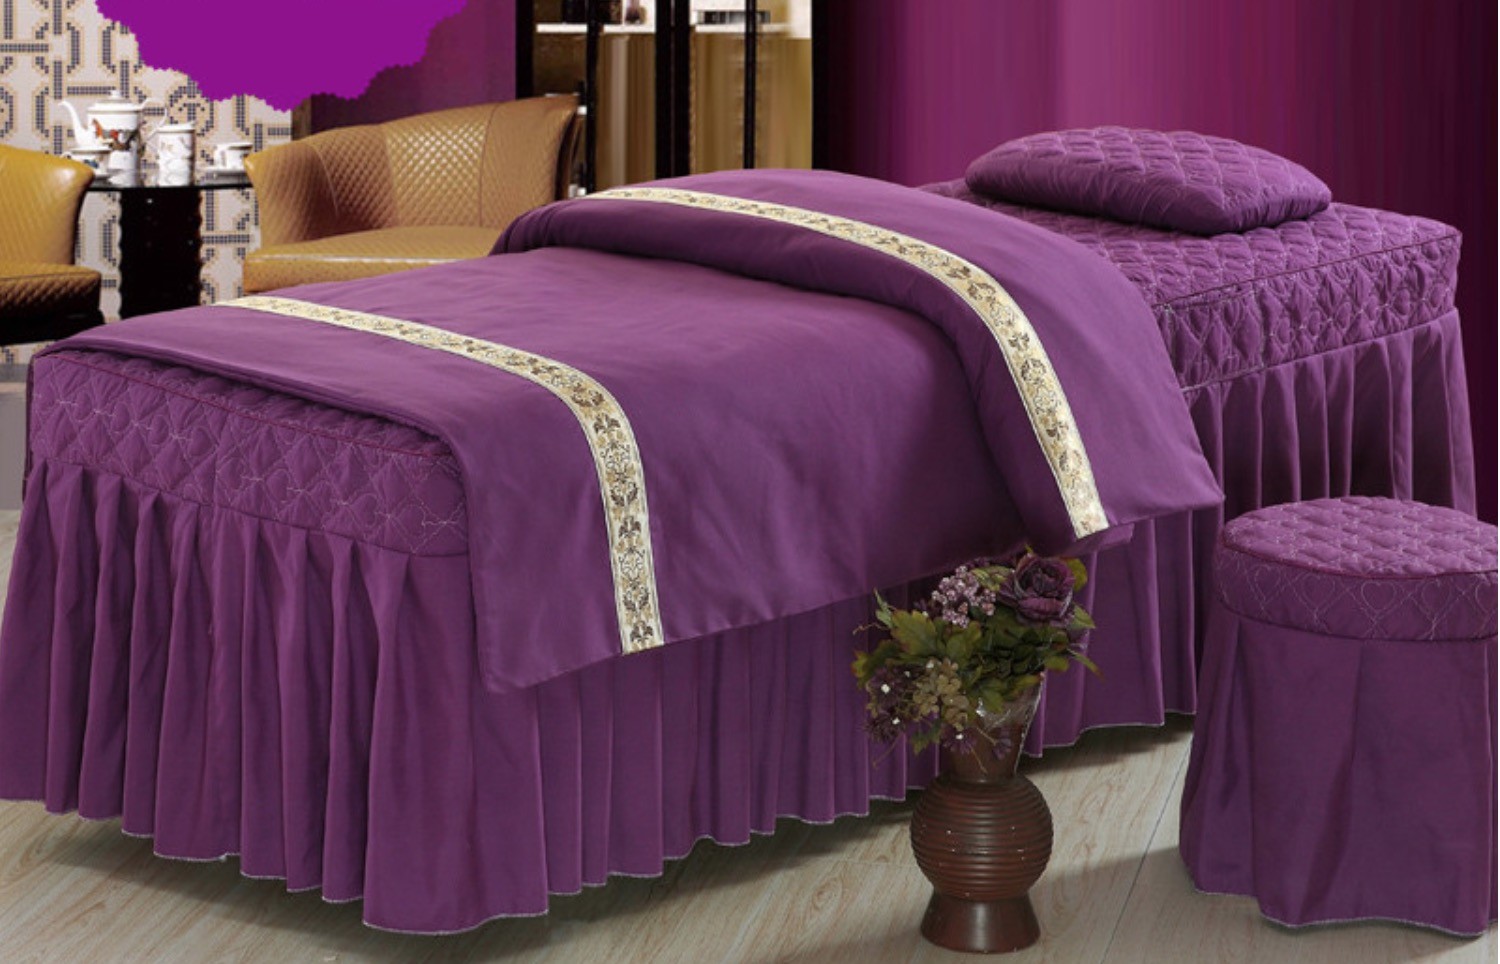 [下單即贈送毛巾] [美容用品] [四件組] 美容床 按摩床 床罩 床單 床包 四件組 長180cm 寬60cm 高65cm